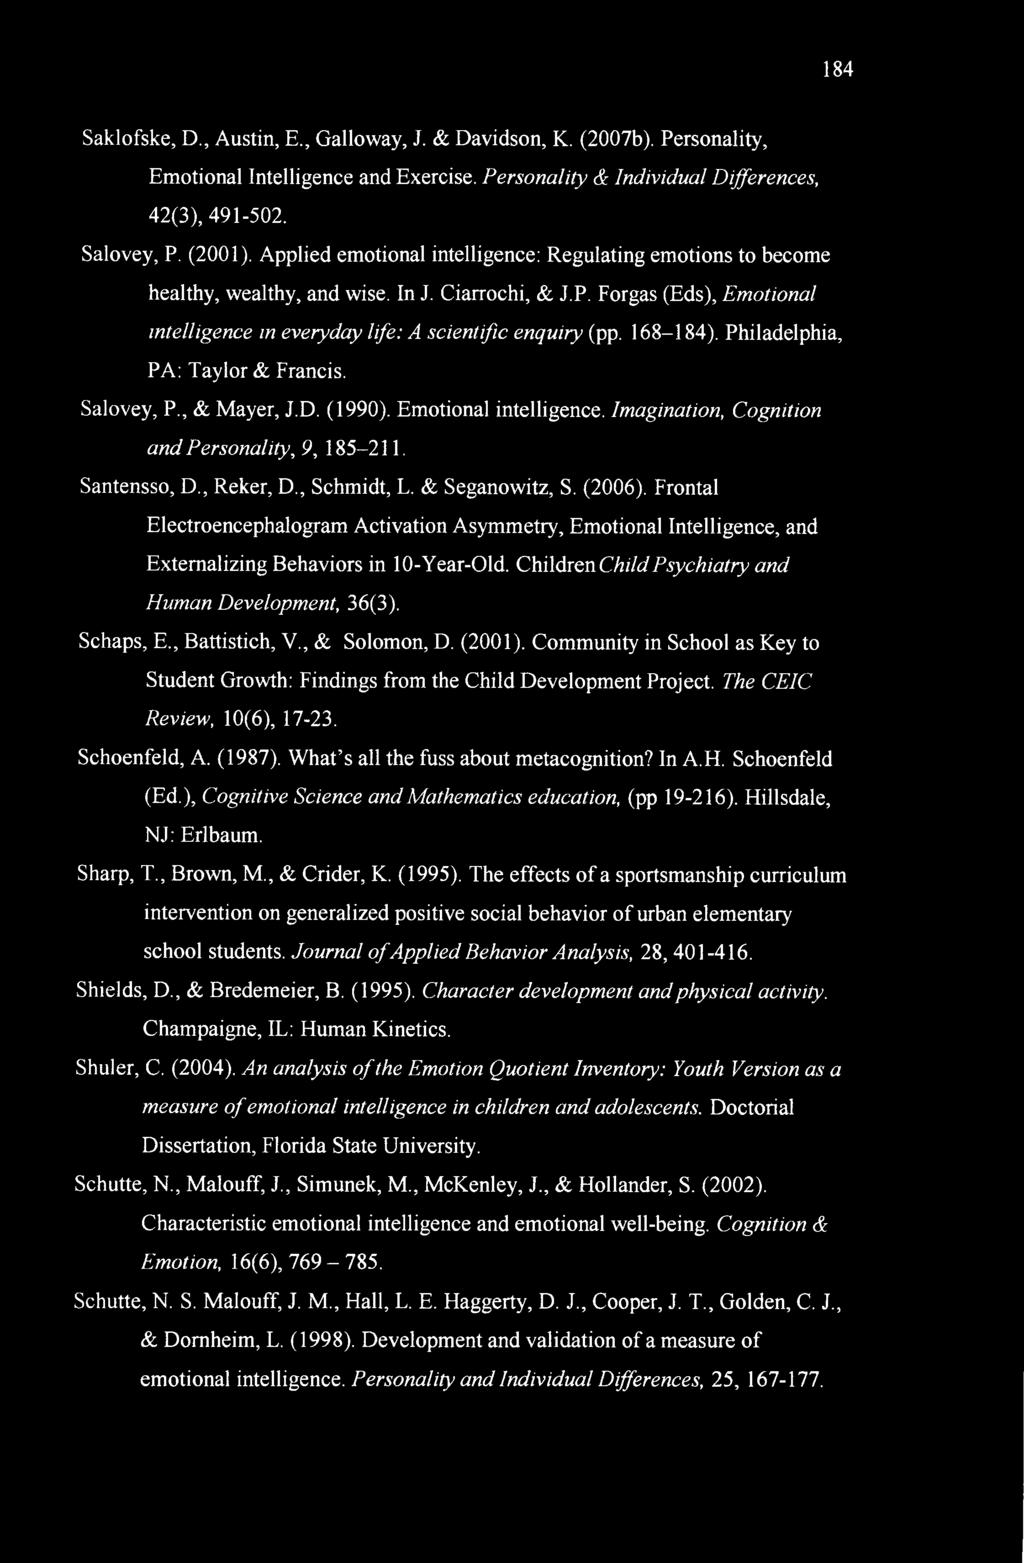 168-184). Philadelphia, PA: Taylor & Francis. Salovey, P., & Mayer, J.D. (1990). Emotional intelligence. Imagination, Cognition and Personality, 9, 185-211. Santensso, D., Reker, D., Schmidt, L.